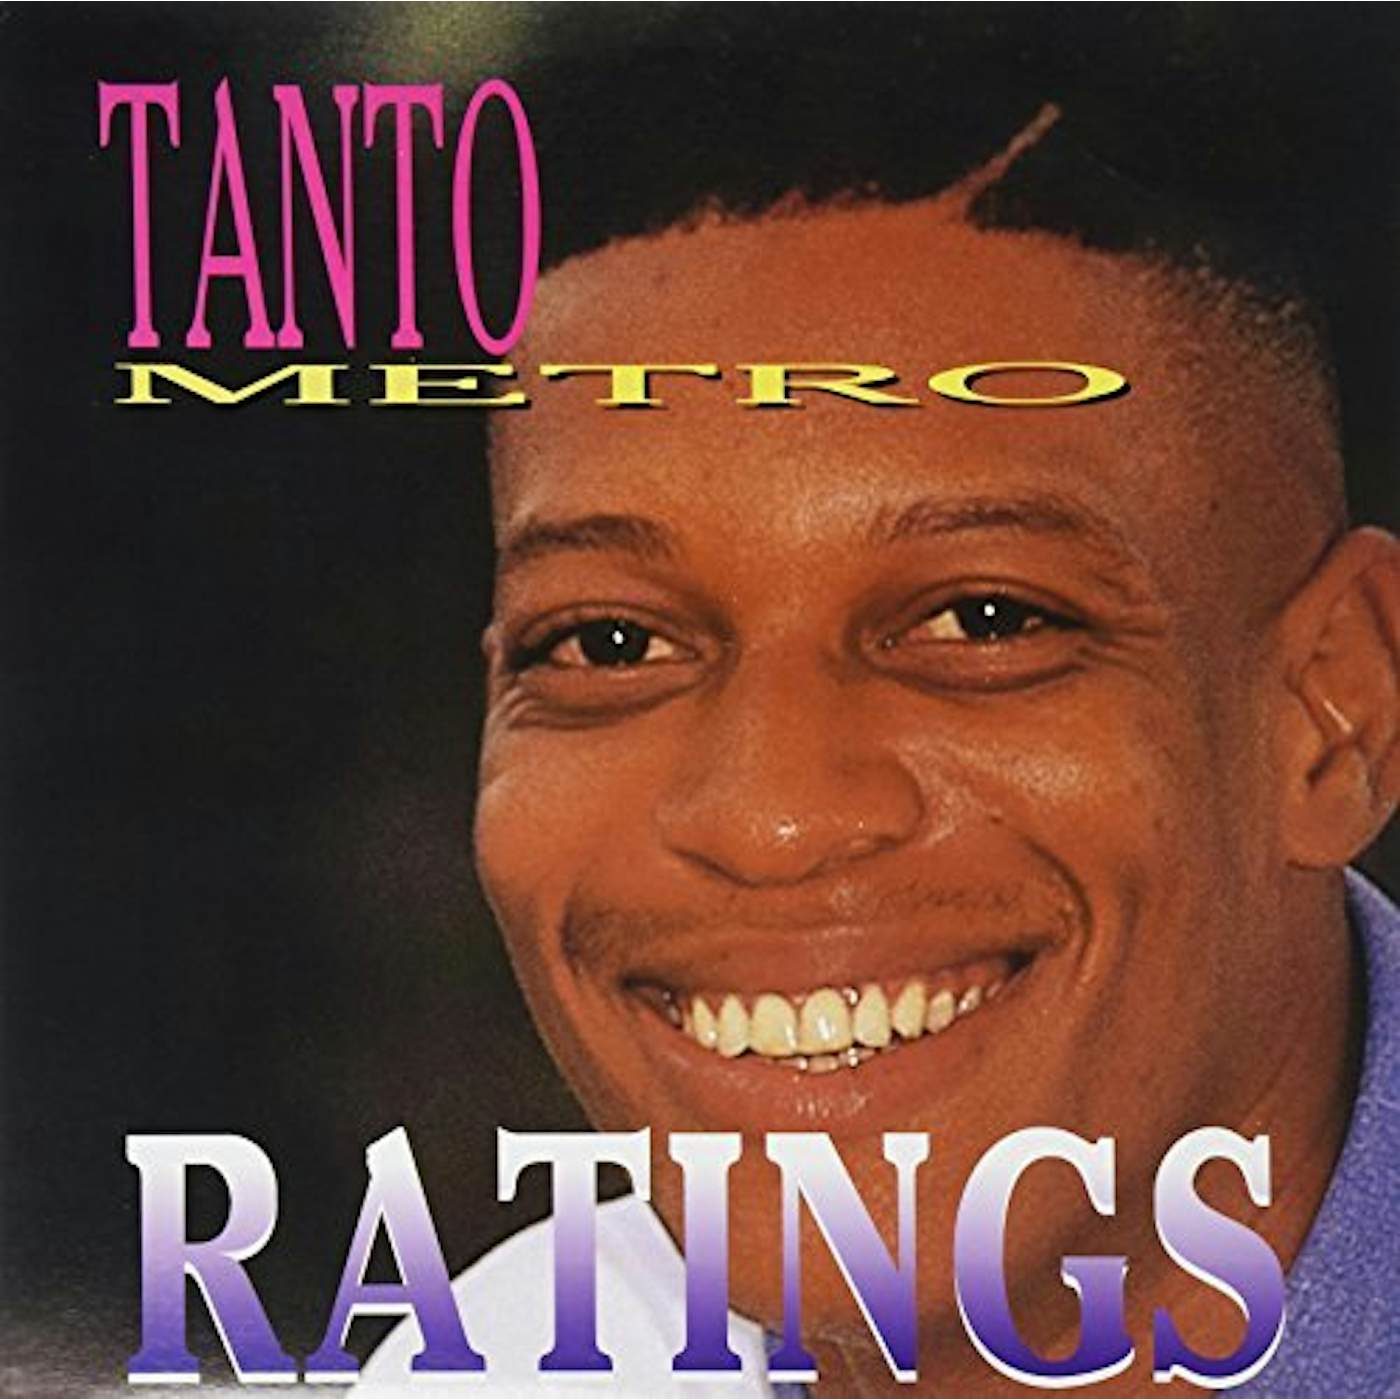 Tanto Metro Ratings Vinyl Record